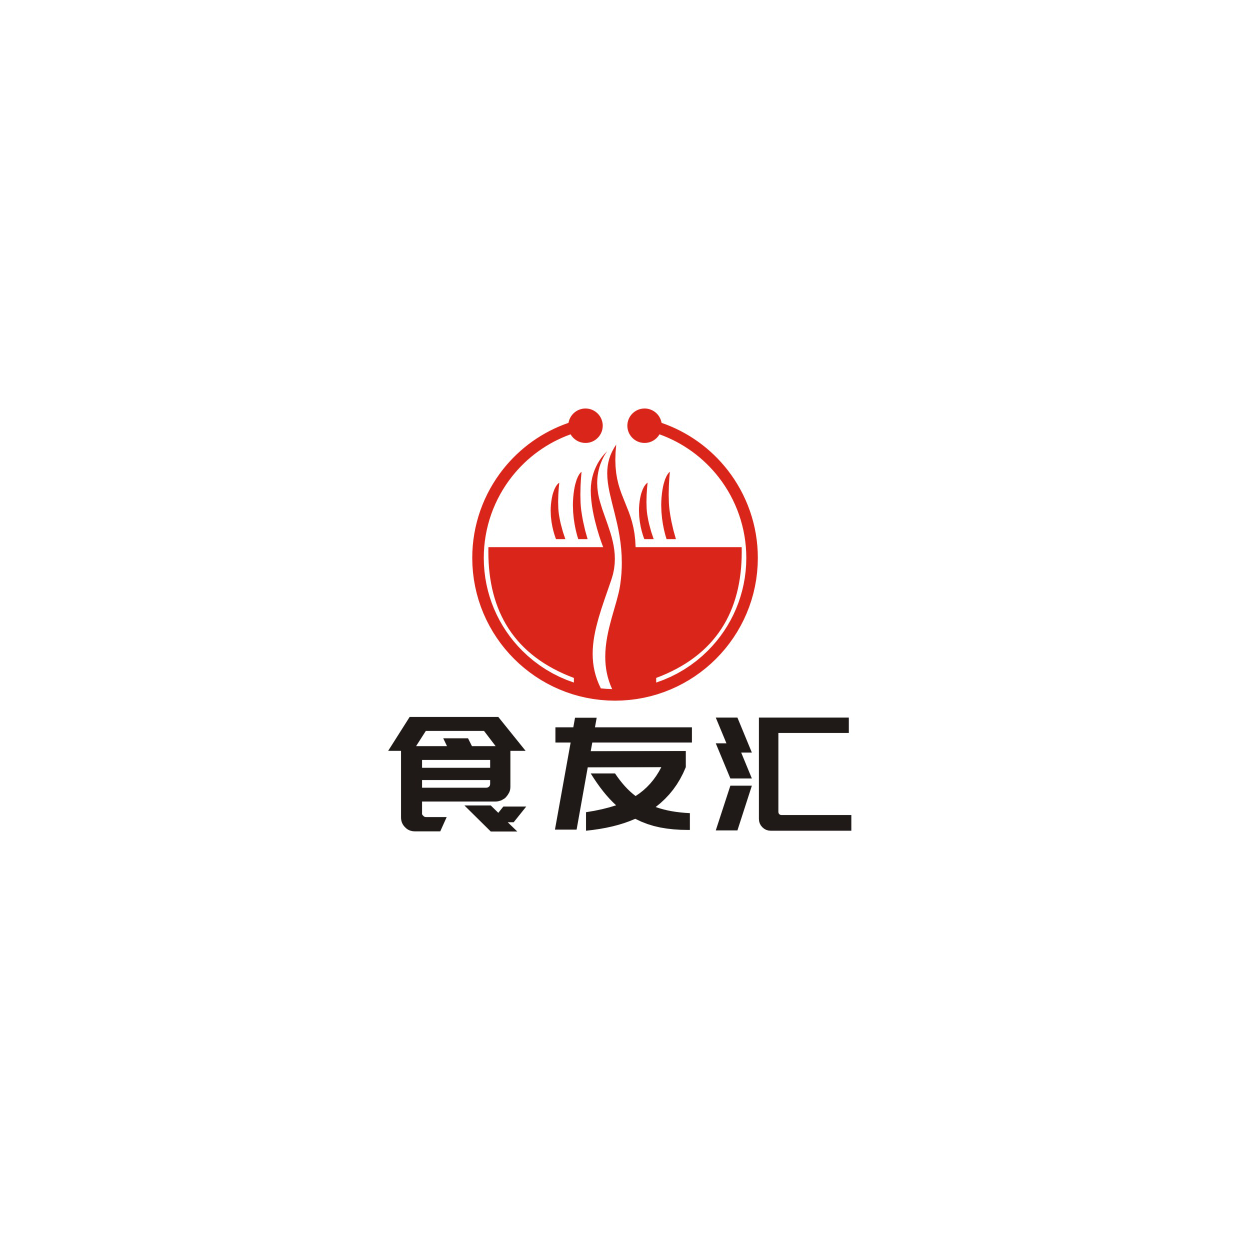 南京食友汇食品贸易有限公司logo